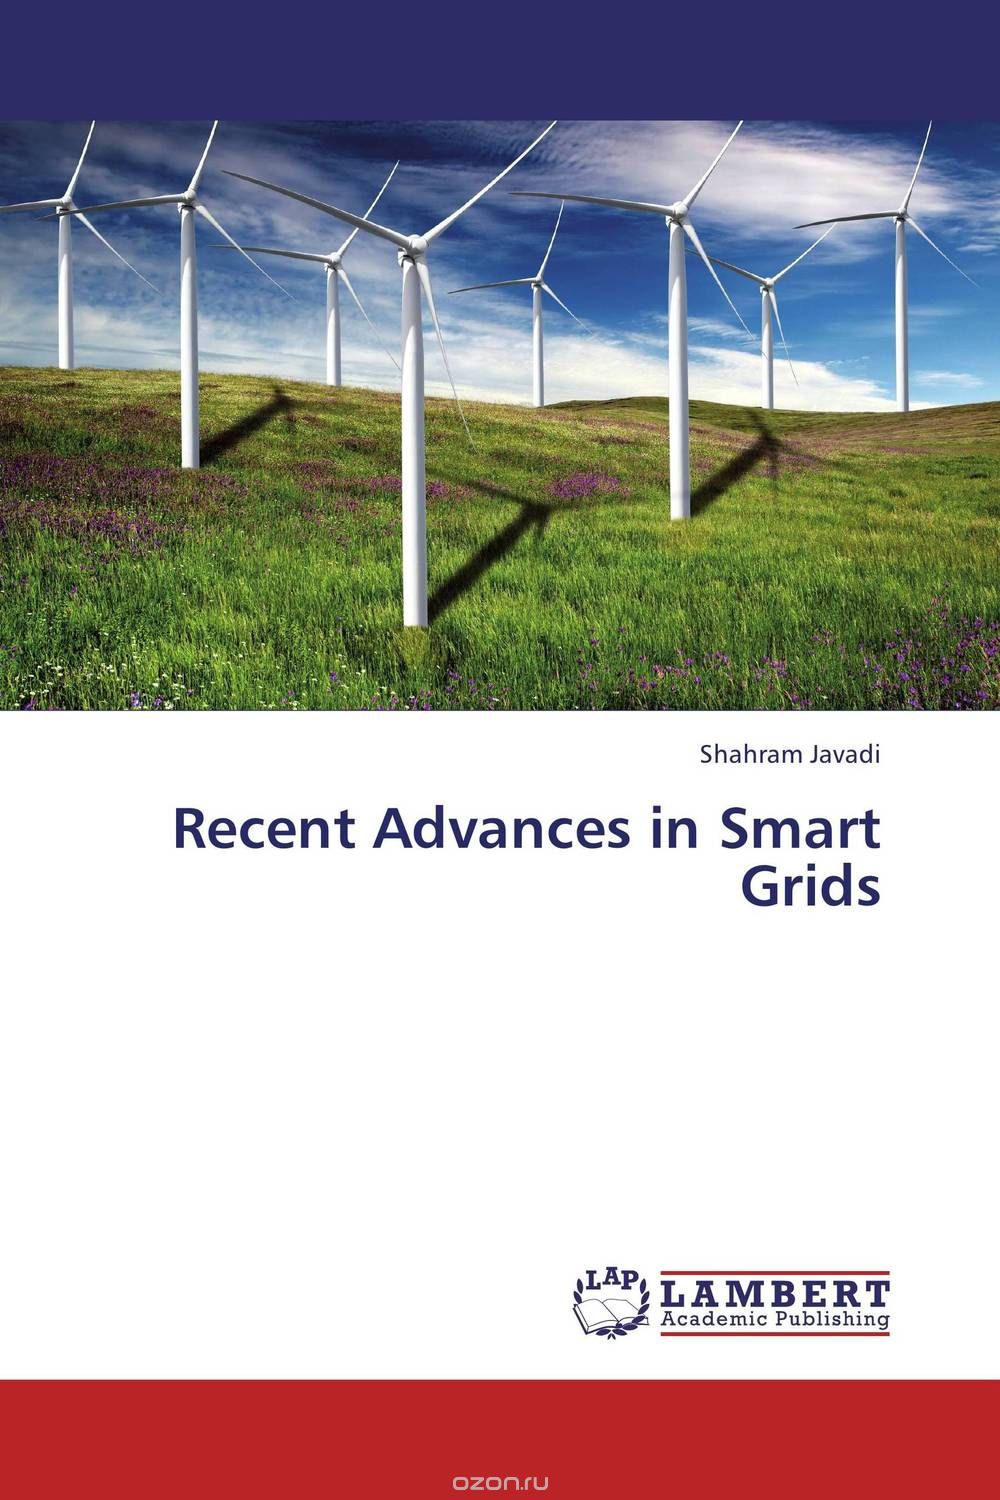 Скачать книгу "Recent Advances in Smart Grids"